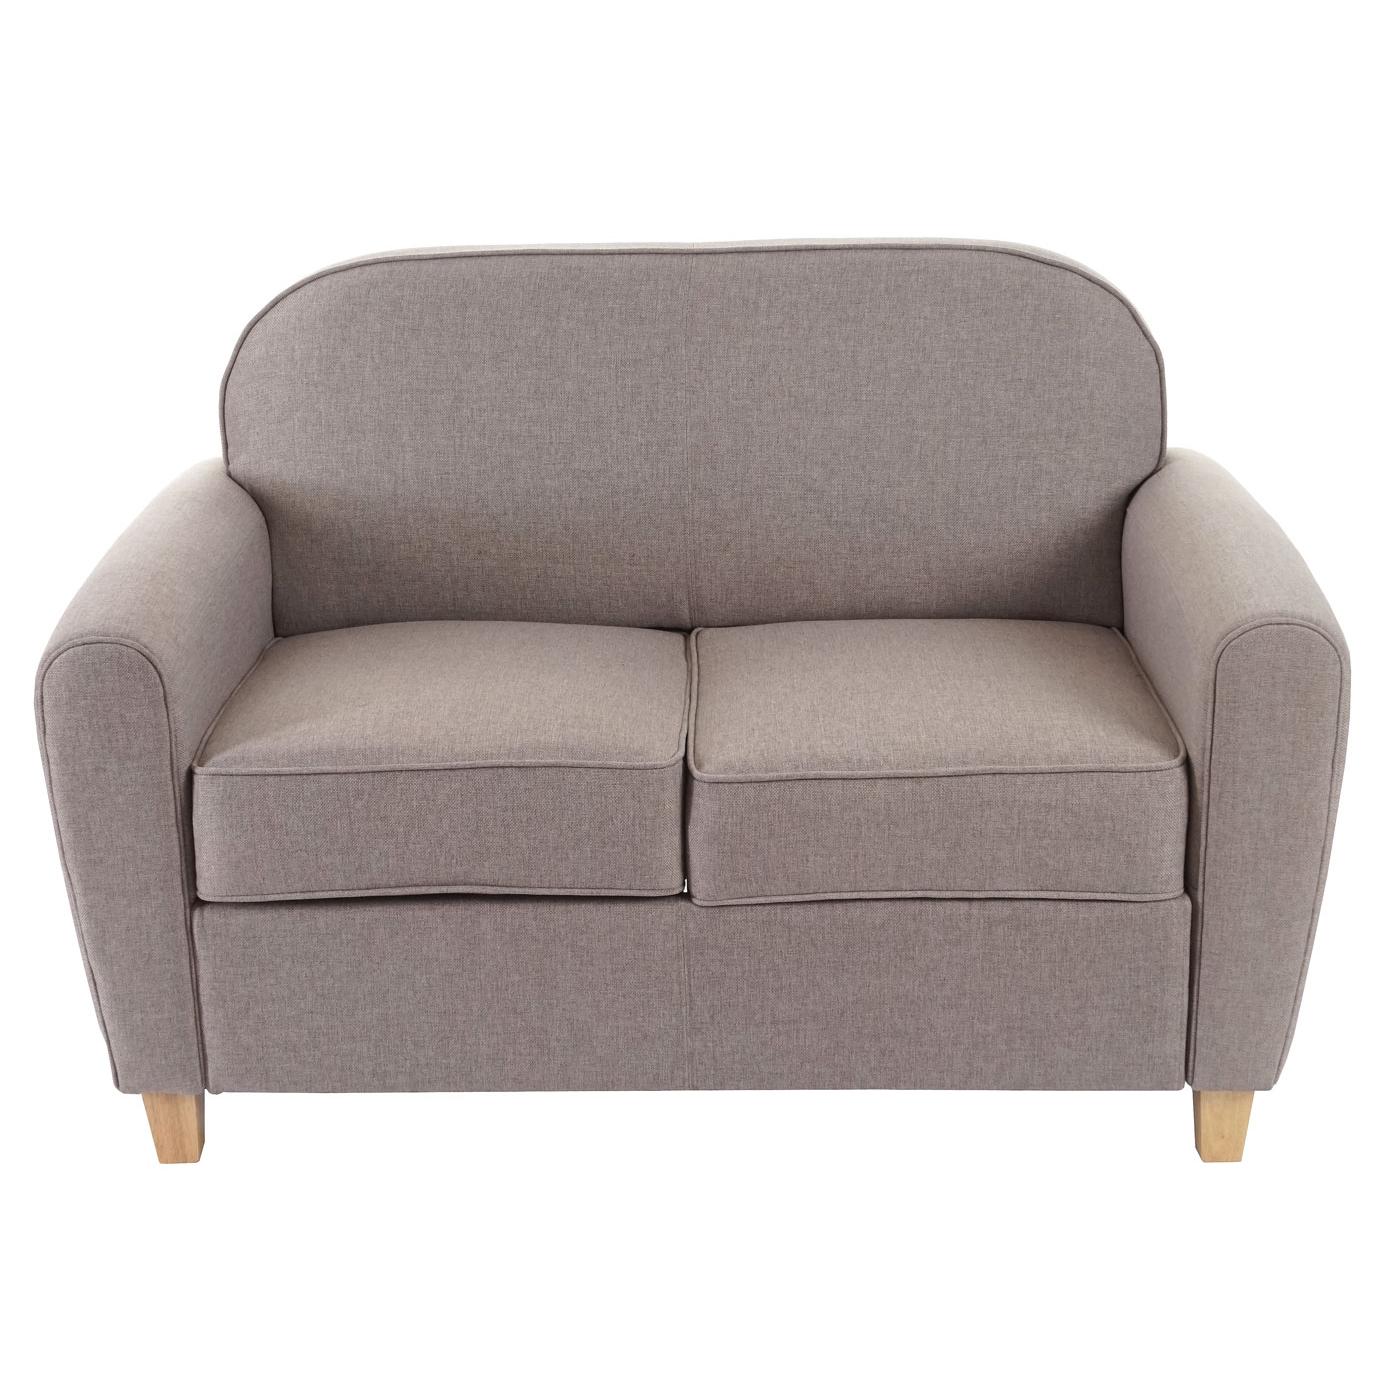 Sofa ARTIS, Zweisitzer. Elegantes Design, bequem und vielseitig, Lederbezug, Farbe Grau